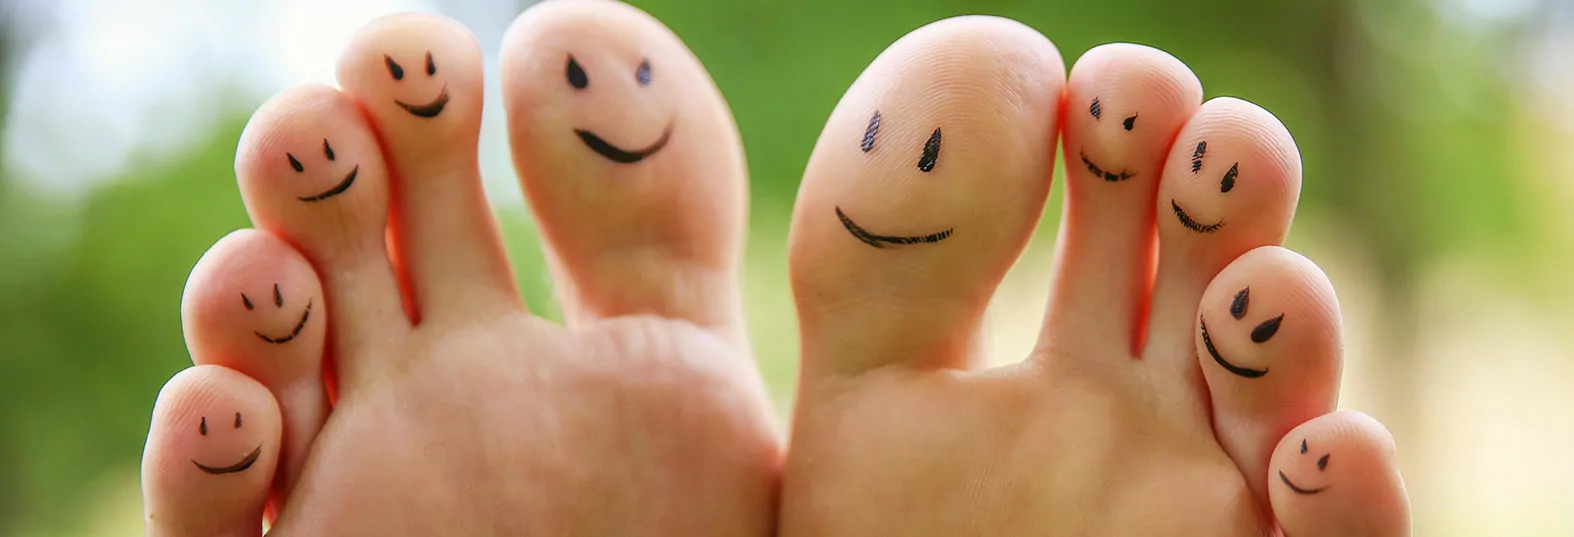 Nos 10 conseils pour préserver la santé de vos pieds